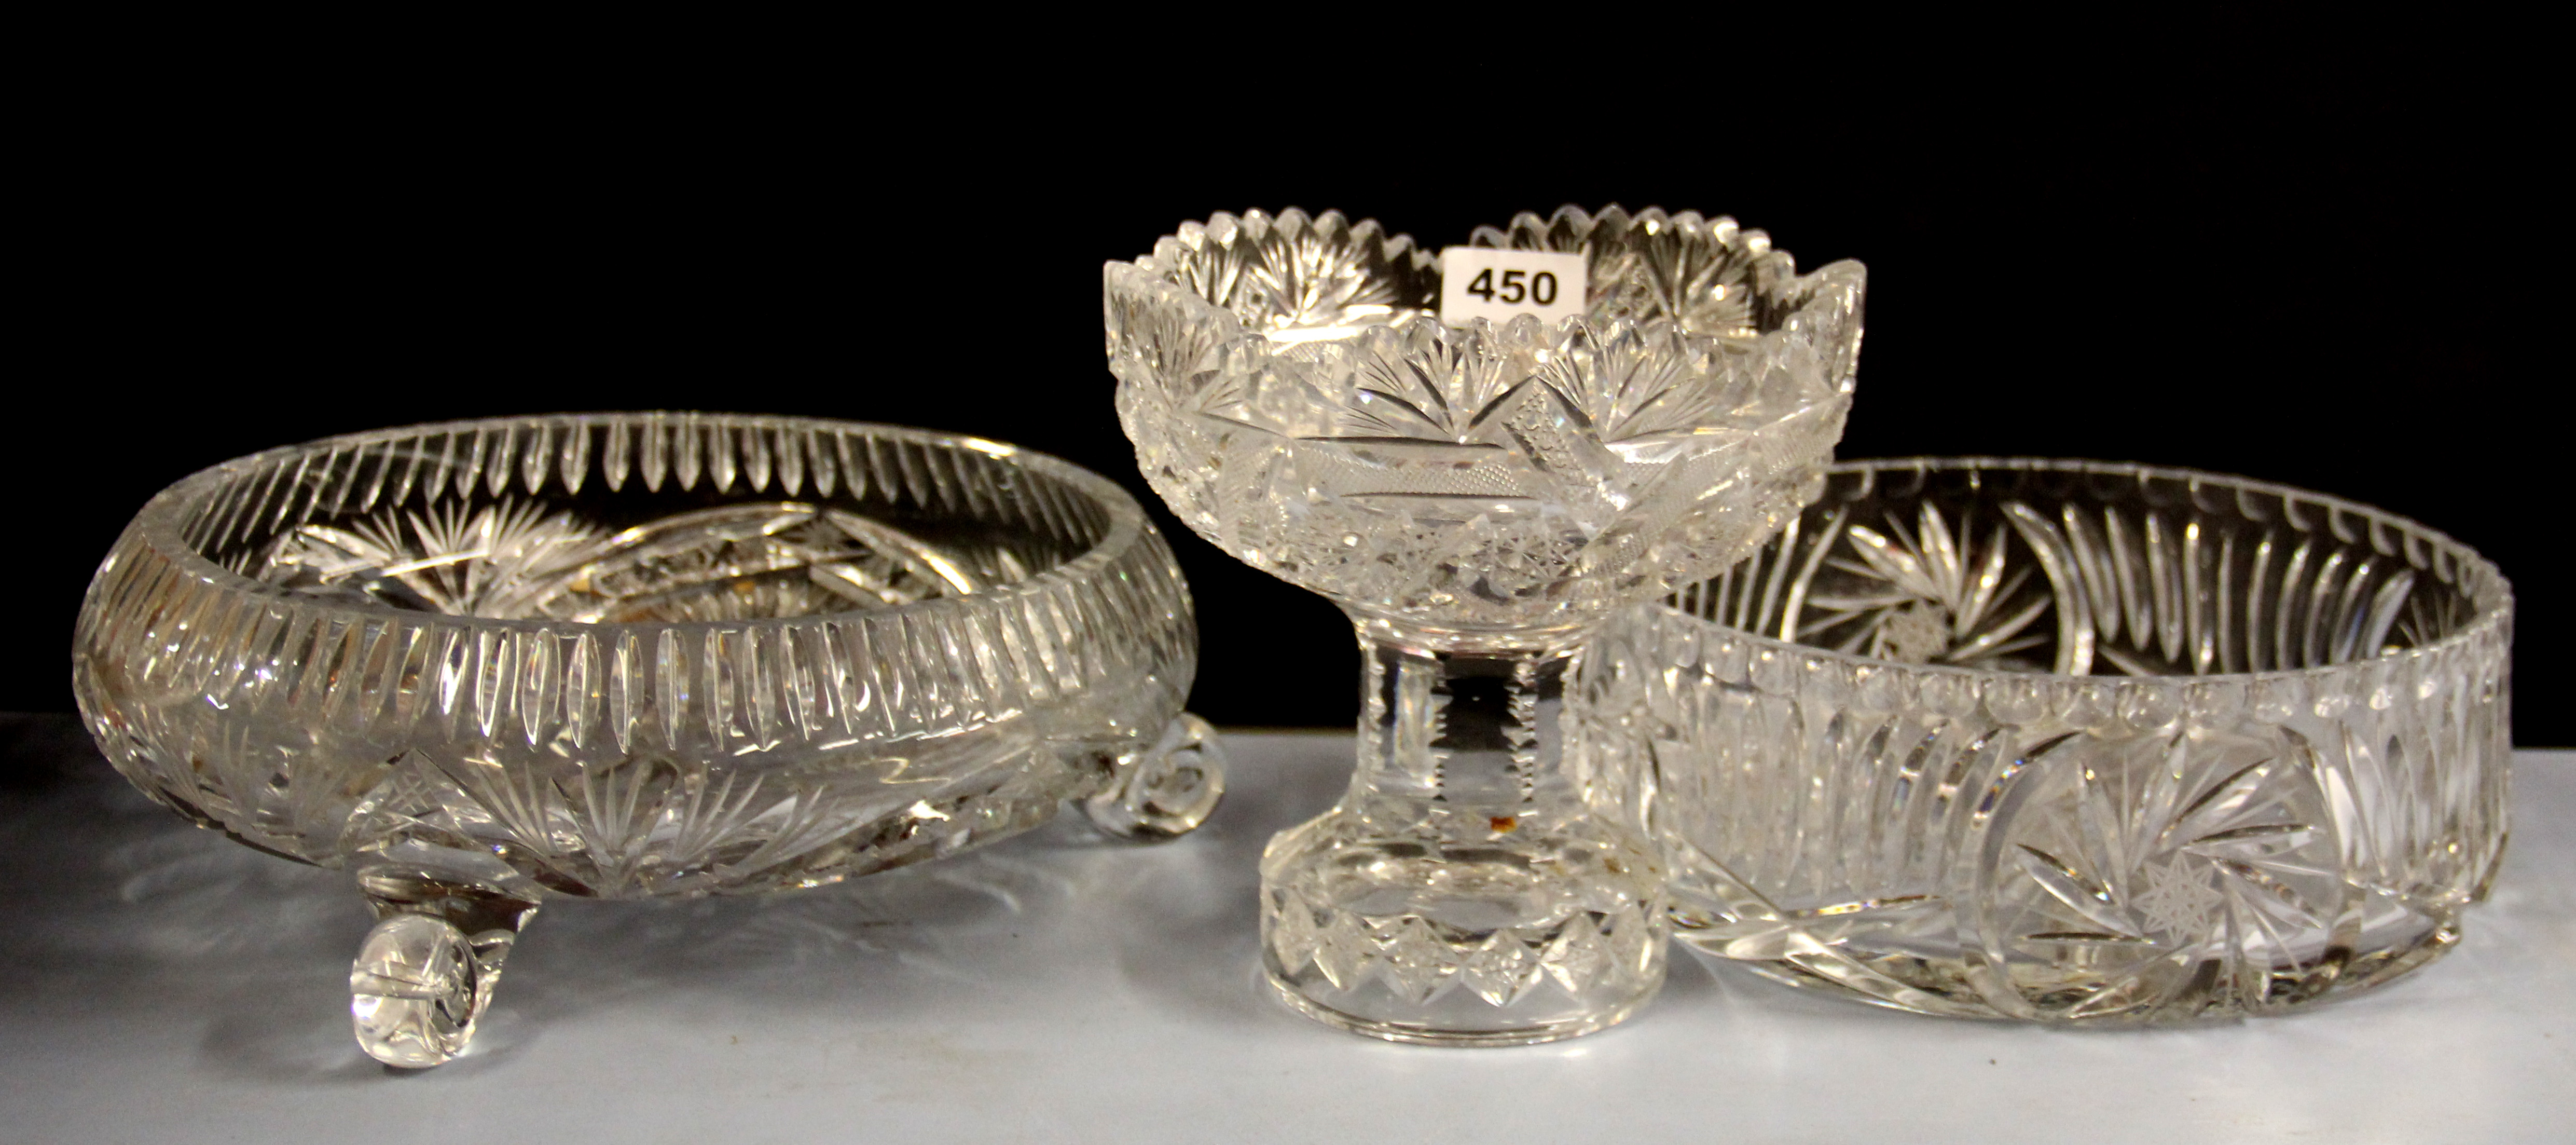 Three heavy cut crystal bowls, largest Dia. 30cm.